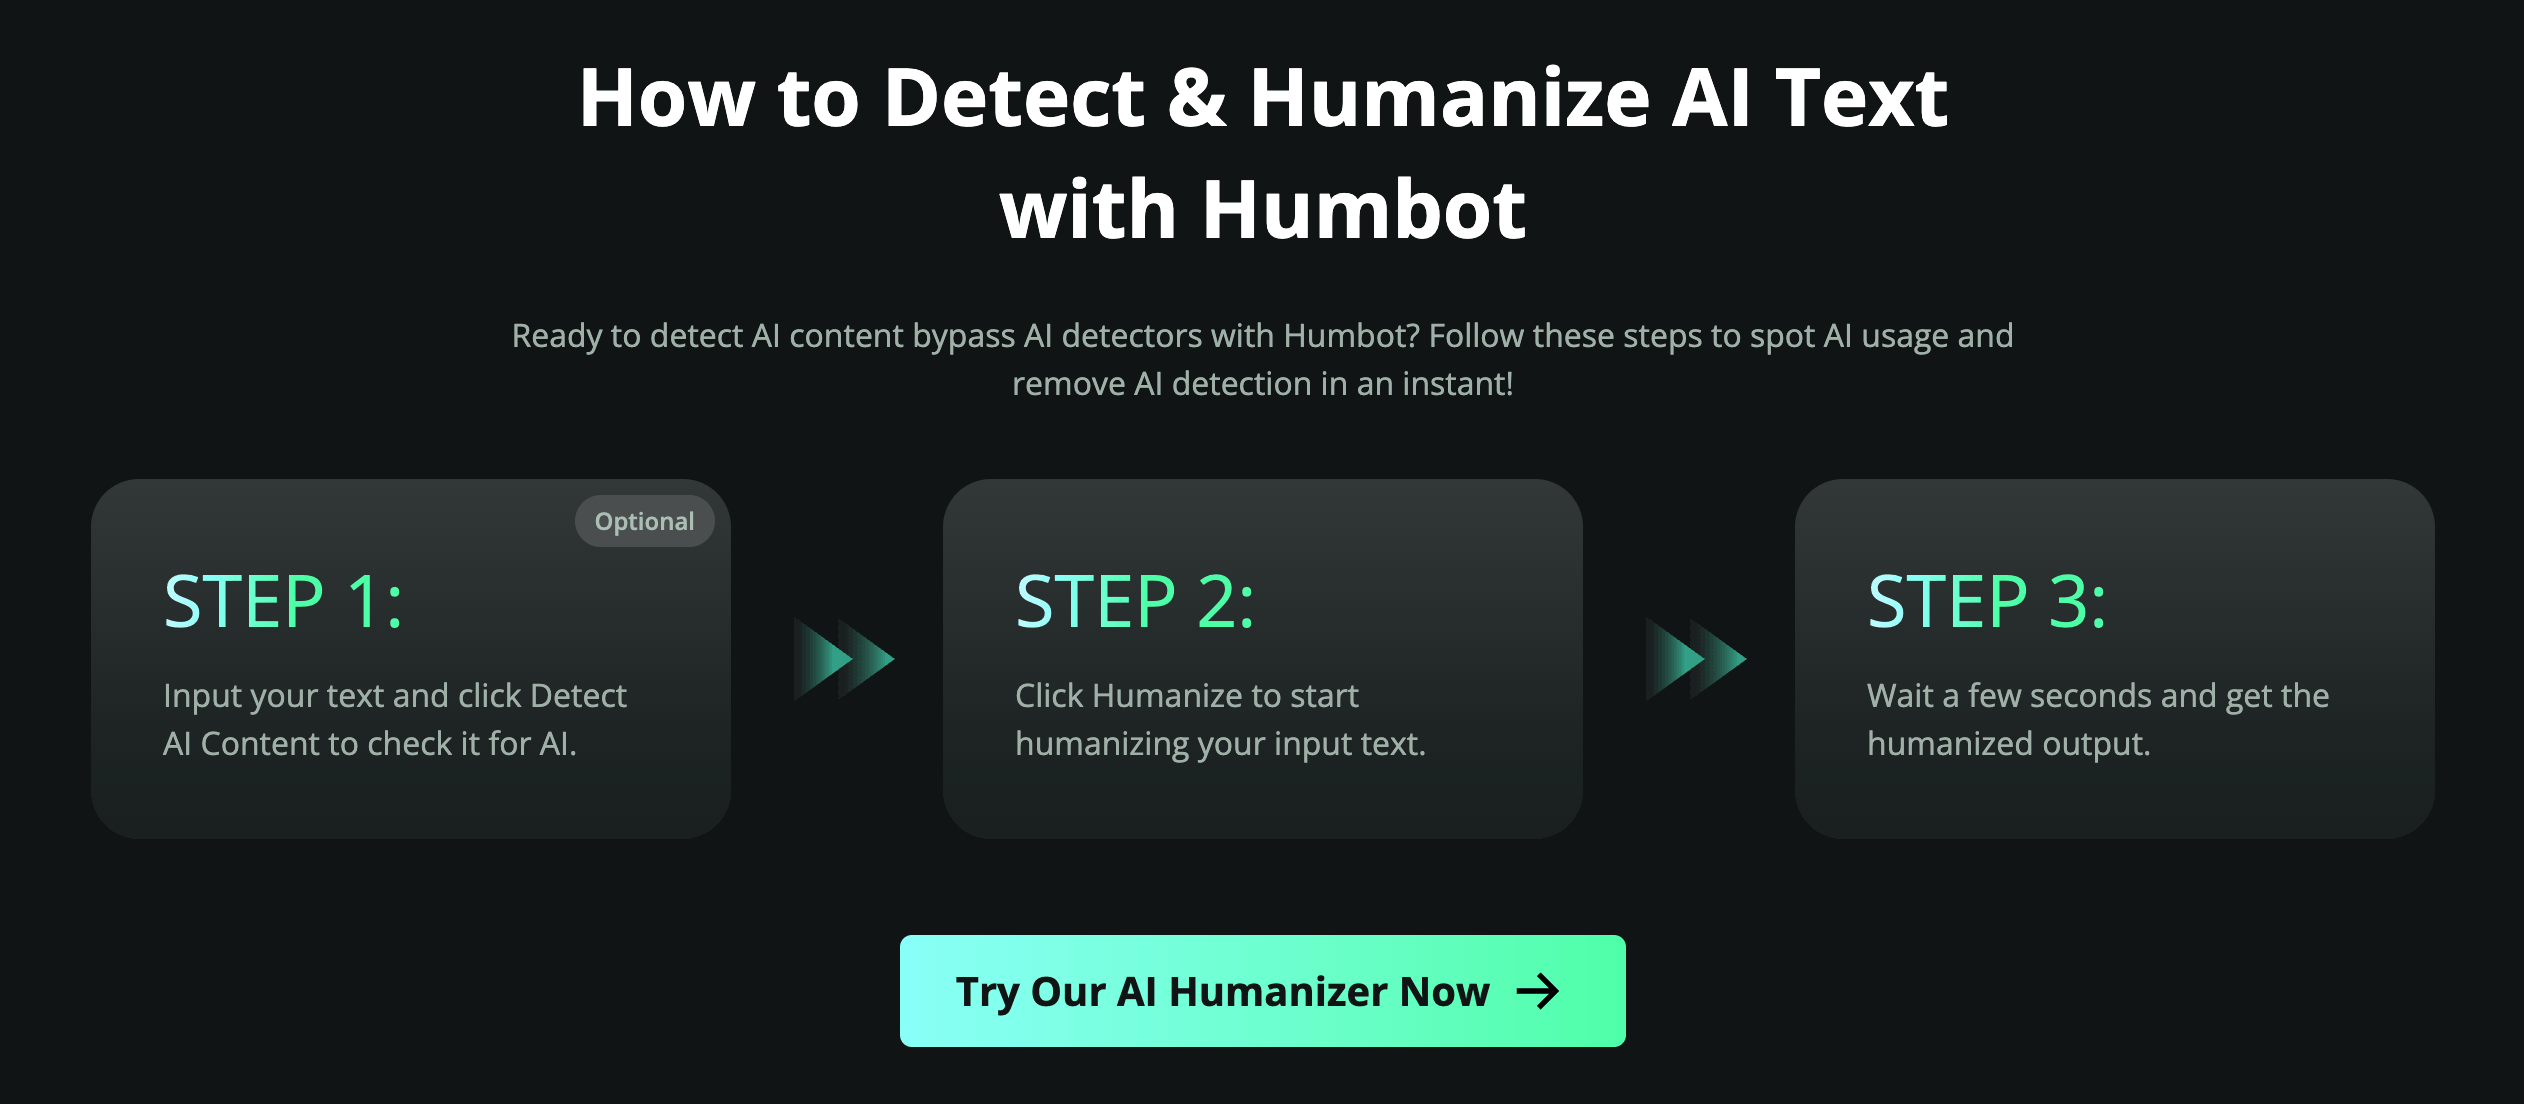 Humbot